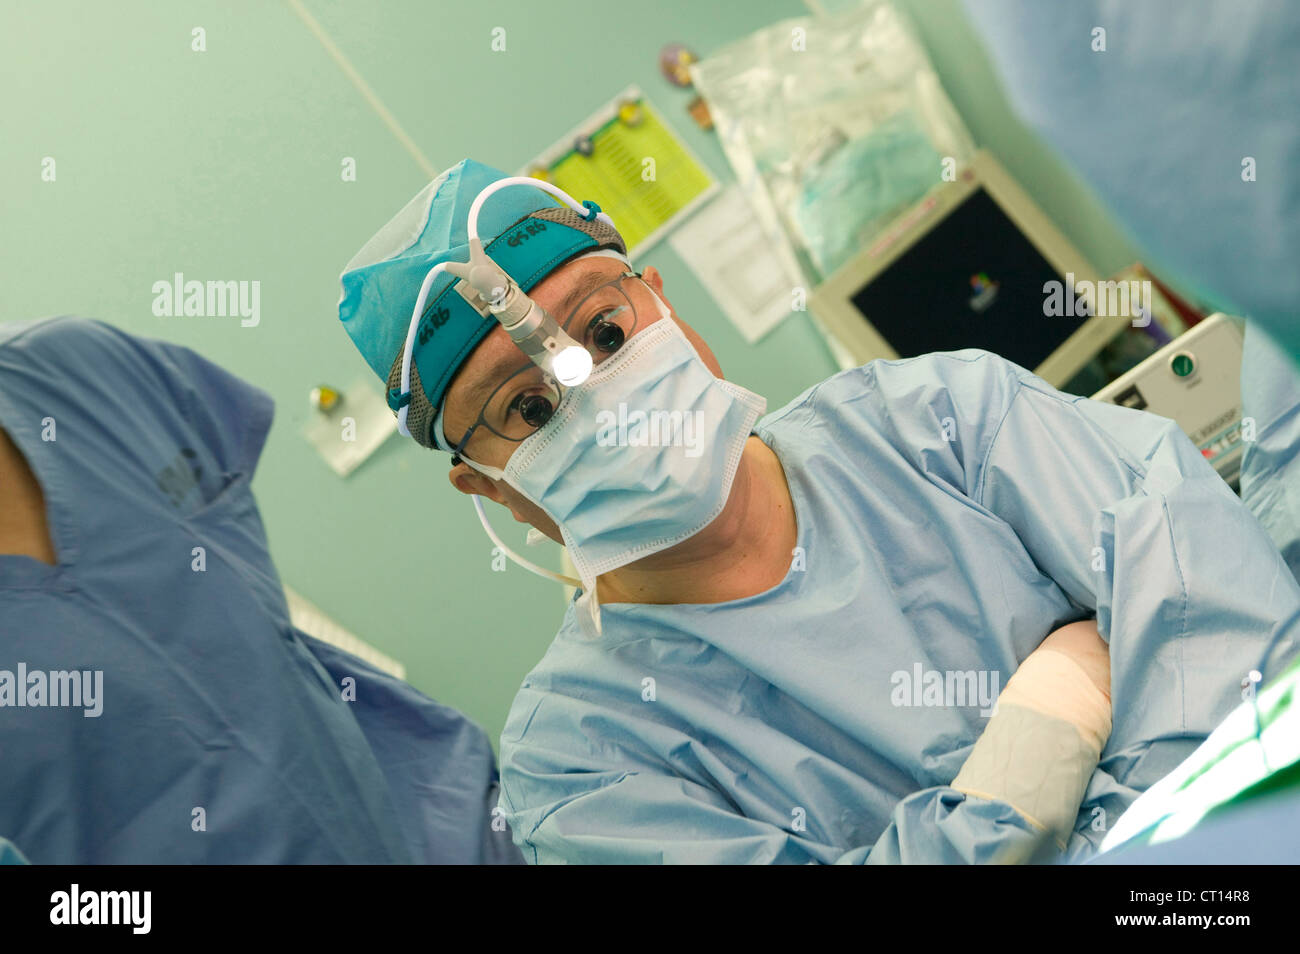 Un chirurgien porte une lampe de tête micro qu'il utilise dans son travail, à la Samsung Medical Center, Seoul, Corée du Sud. Banque D'Images